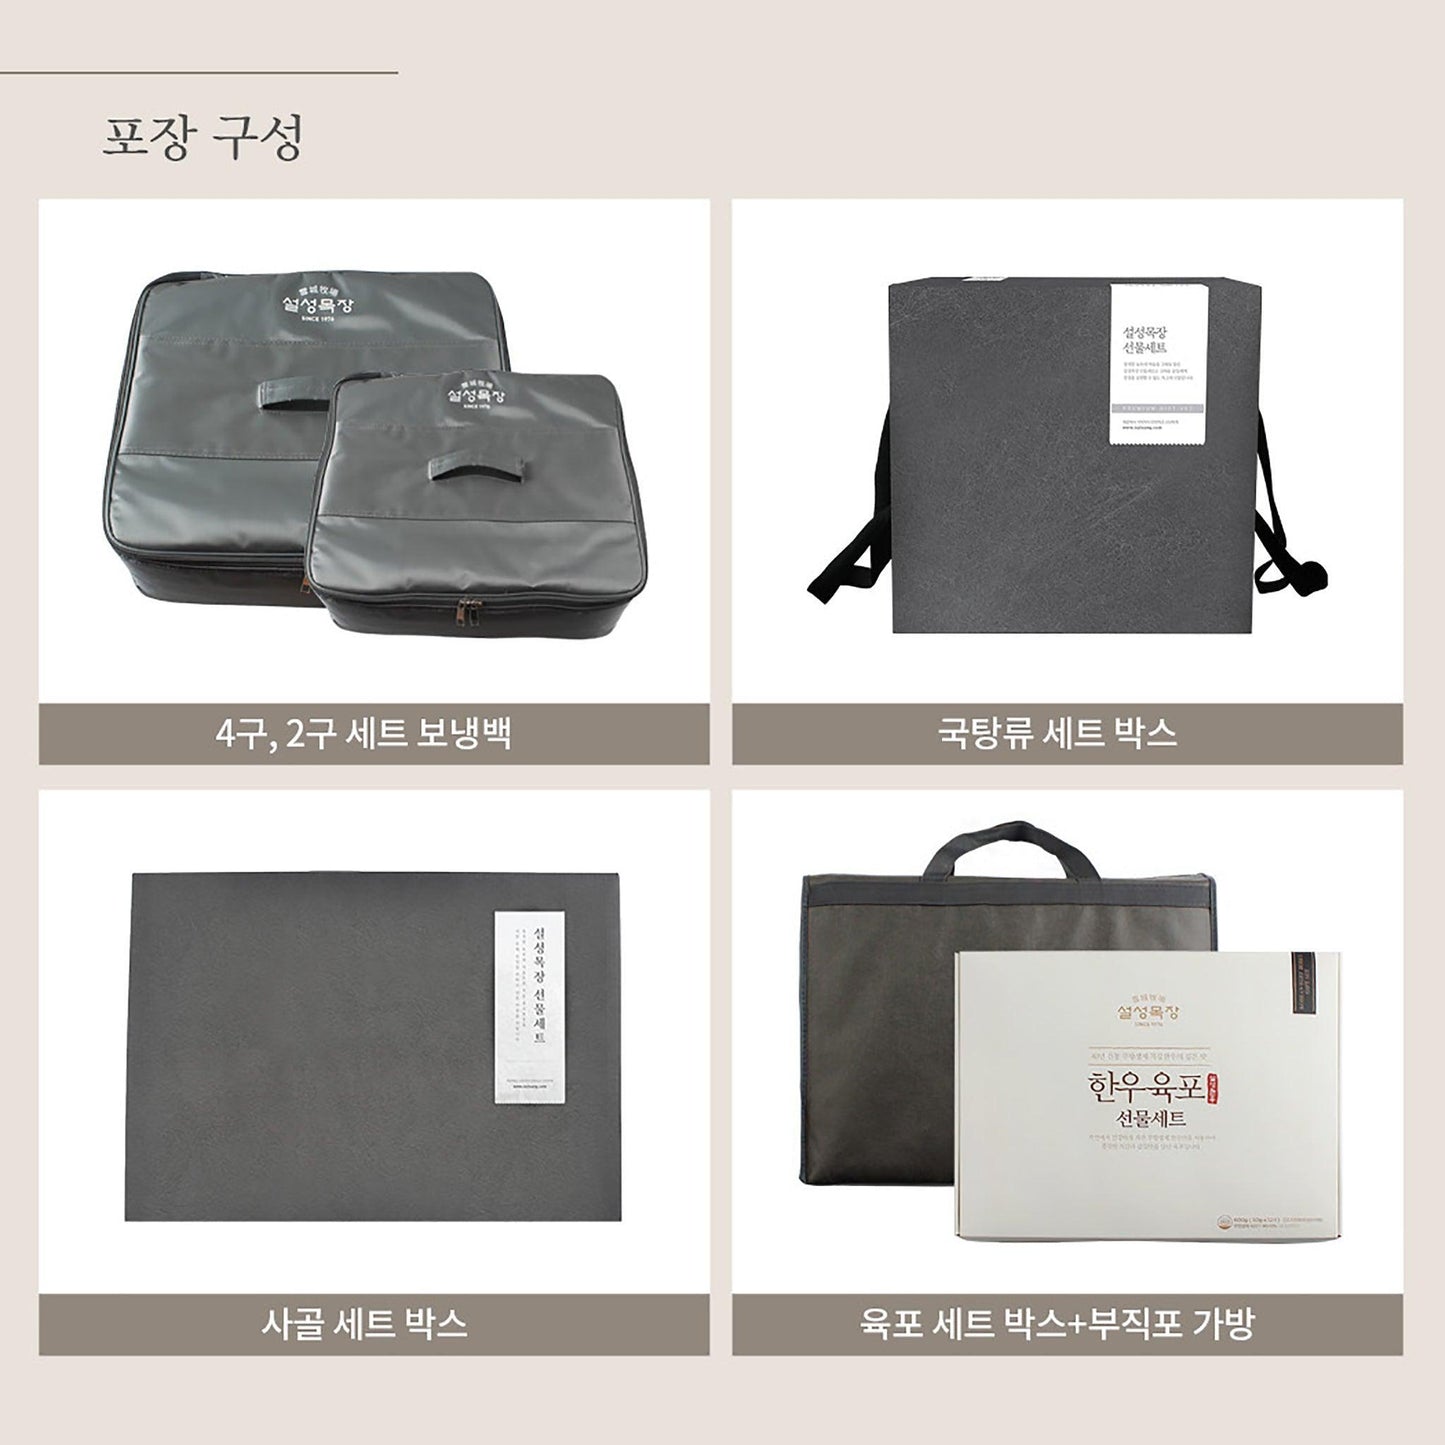 설성목장 명품 육포 세트 (Delivery Available Only in Korea) - Kim'C Market